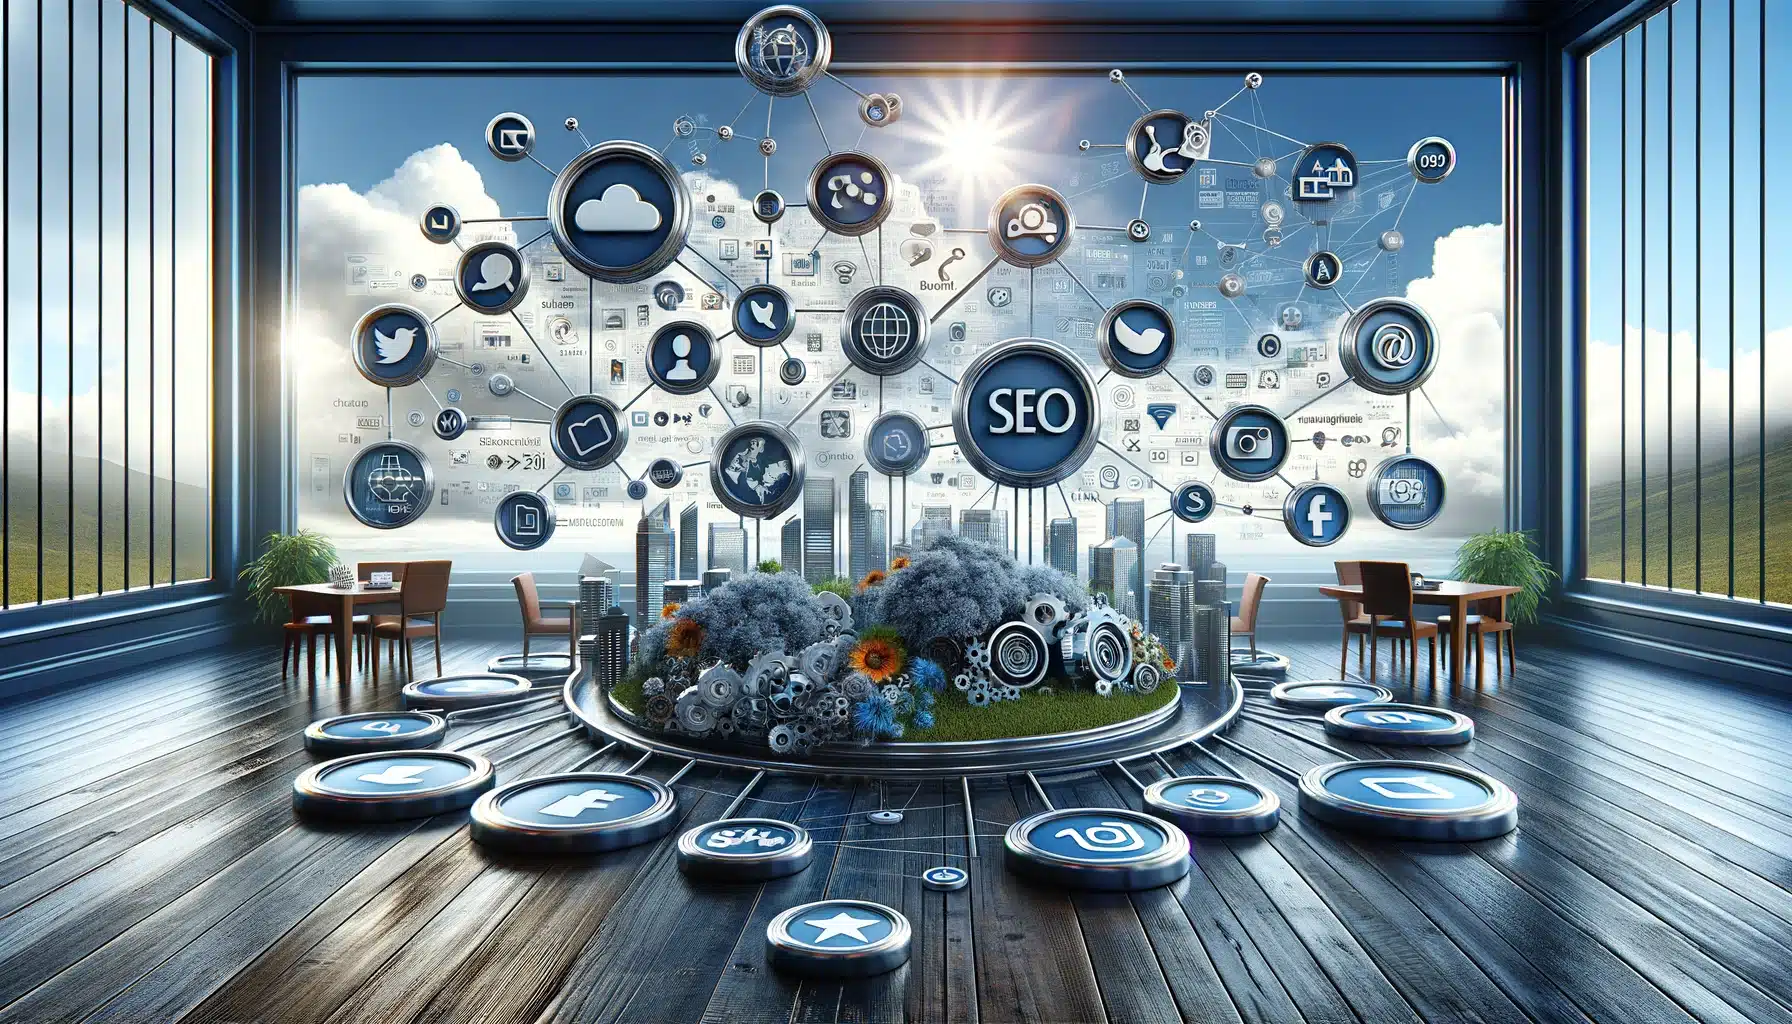 Symbole sozialer Medien verbunden mit SEO-Elementen wie Keywords, Suchmaschinenrankings und Backlinks.